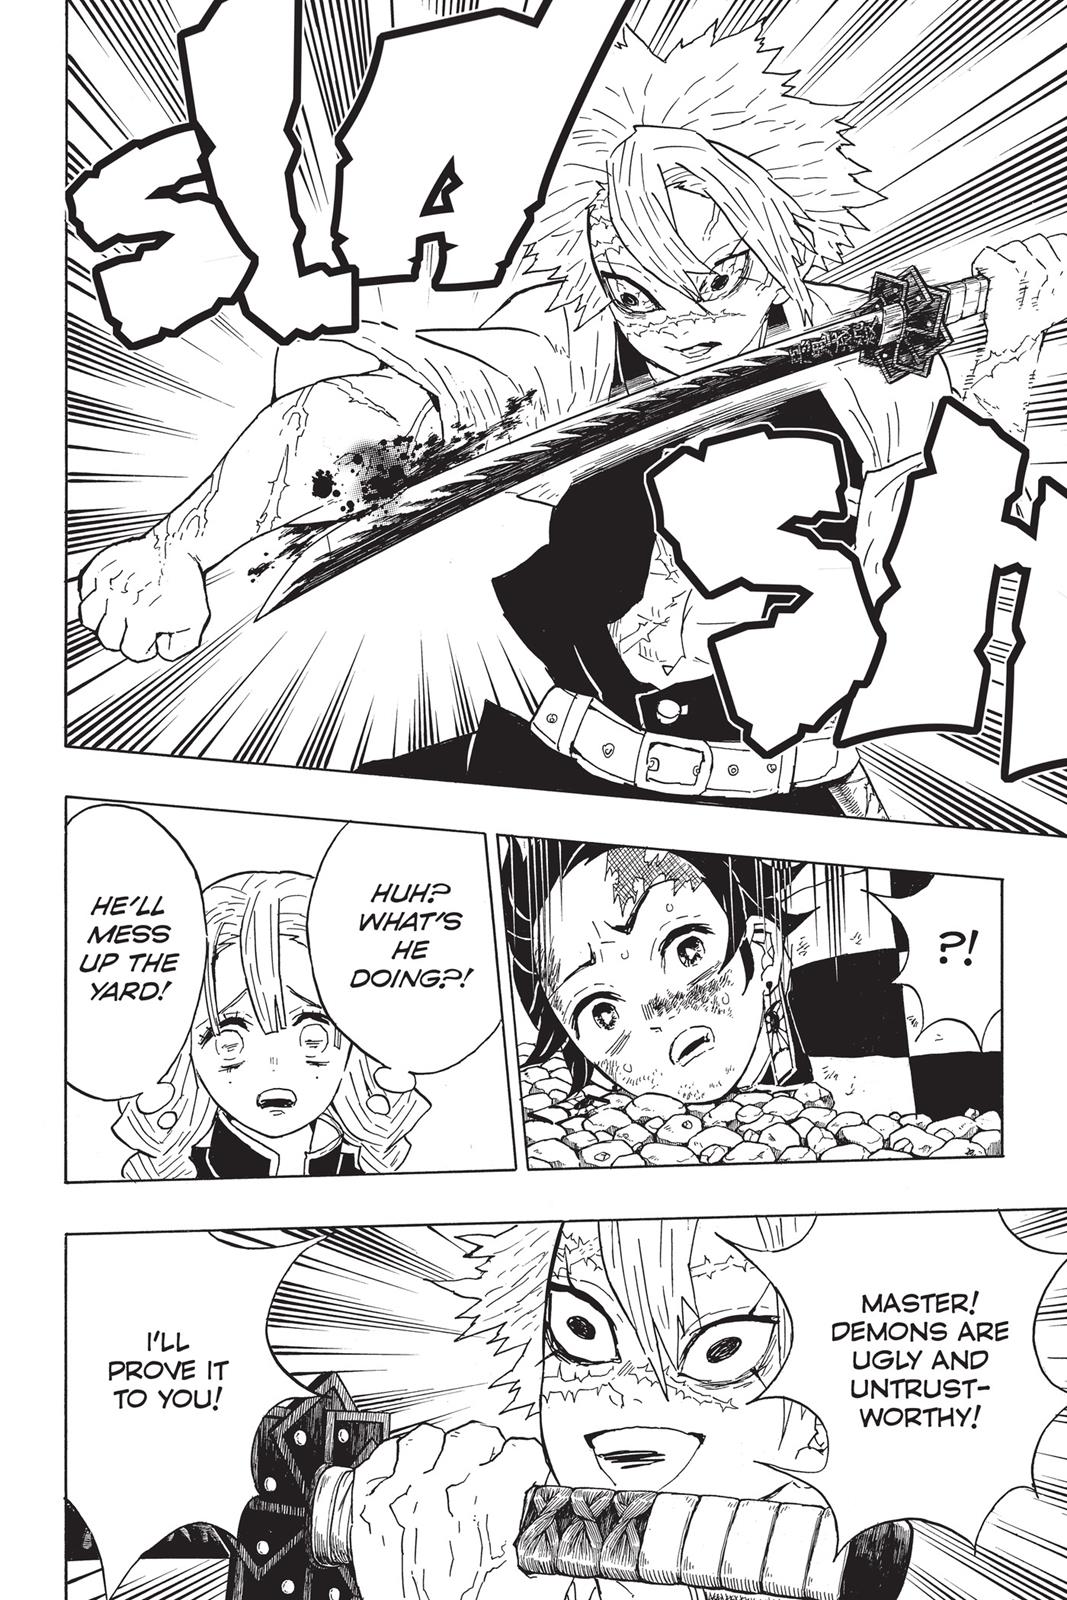 Demon Slayer Manga Manga Chapter - 46 - image 10